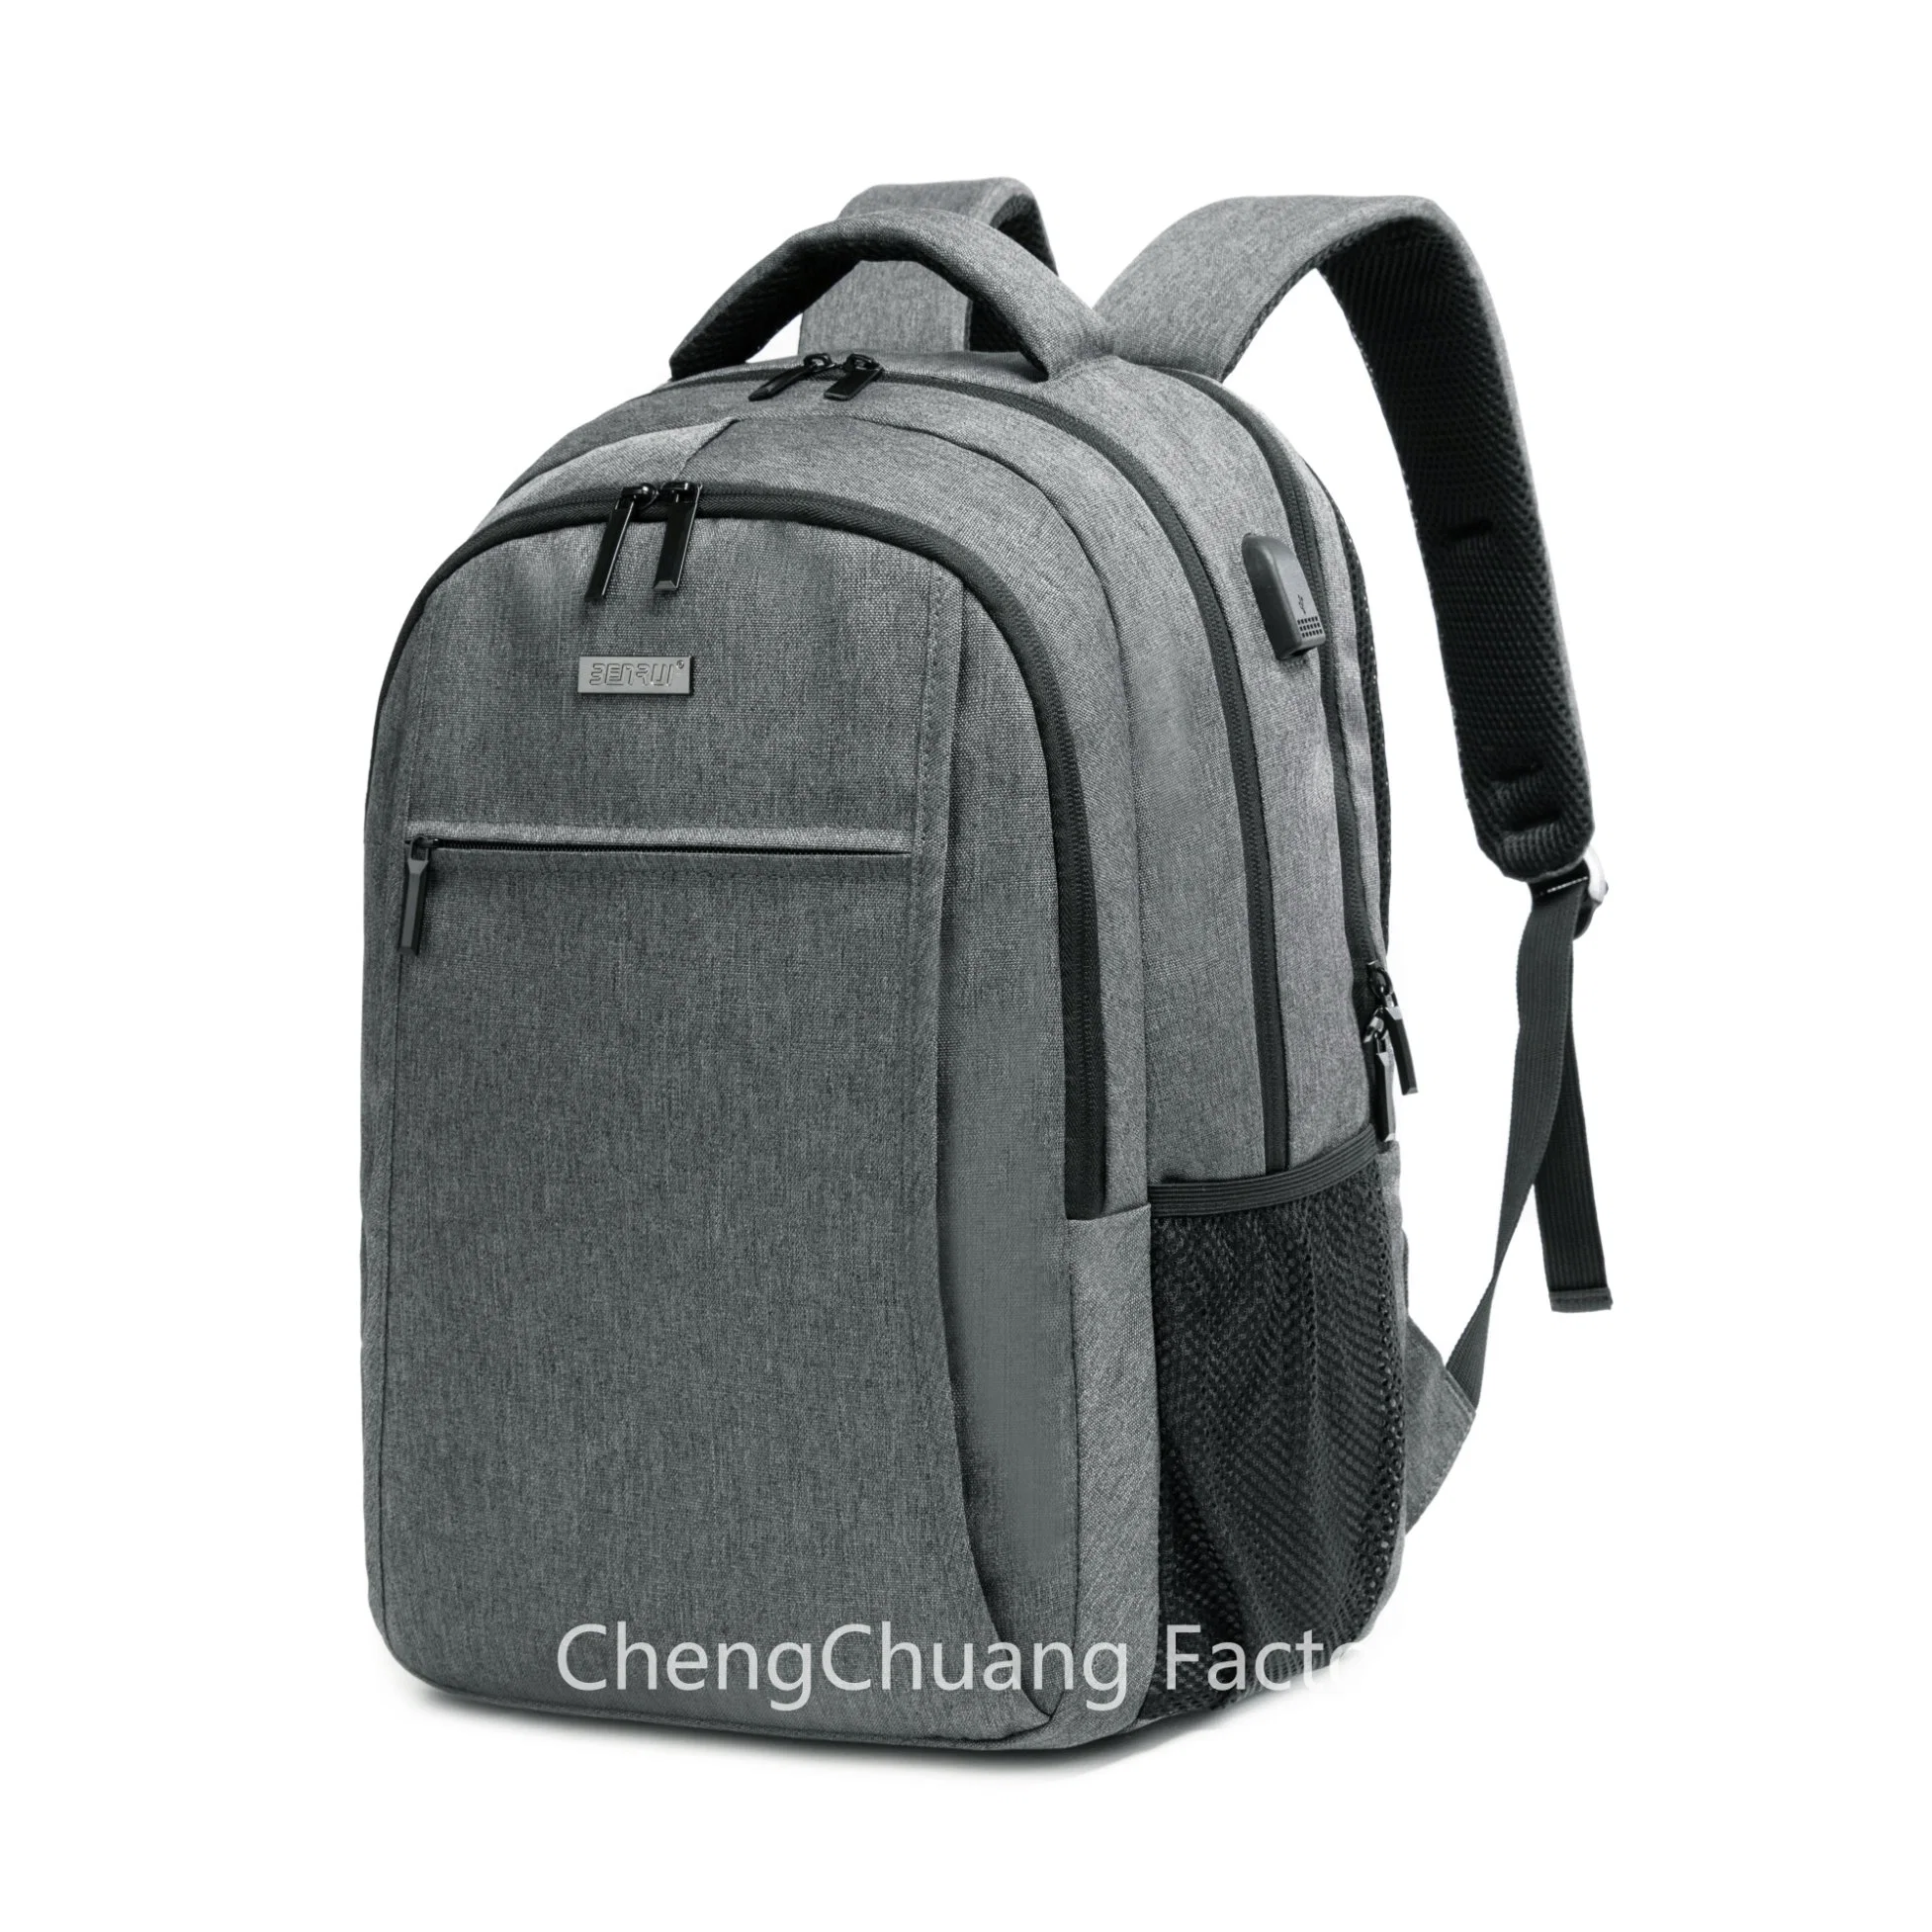 Sac à dos de voyage Bunrui pour ordinateur portable, sac à dos pour étudiant universitaire et lycéen avec chargement USB.